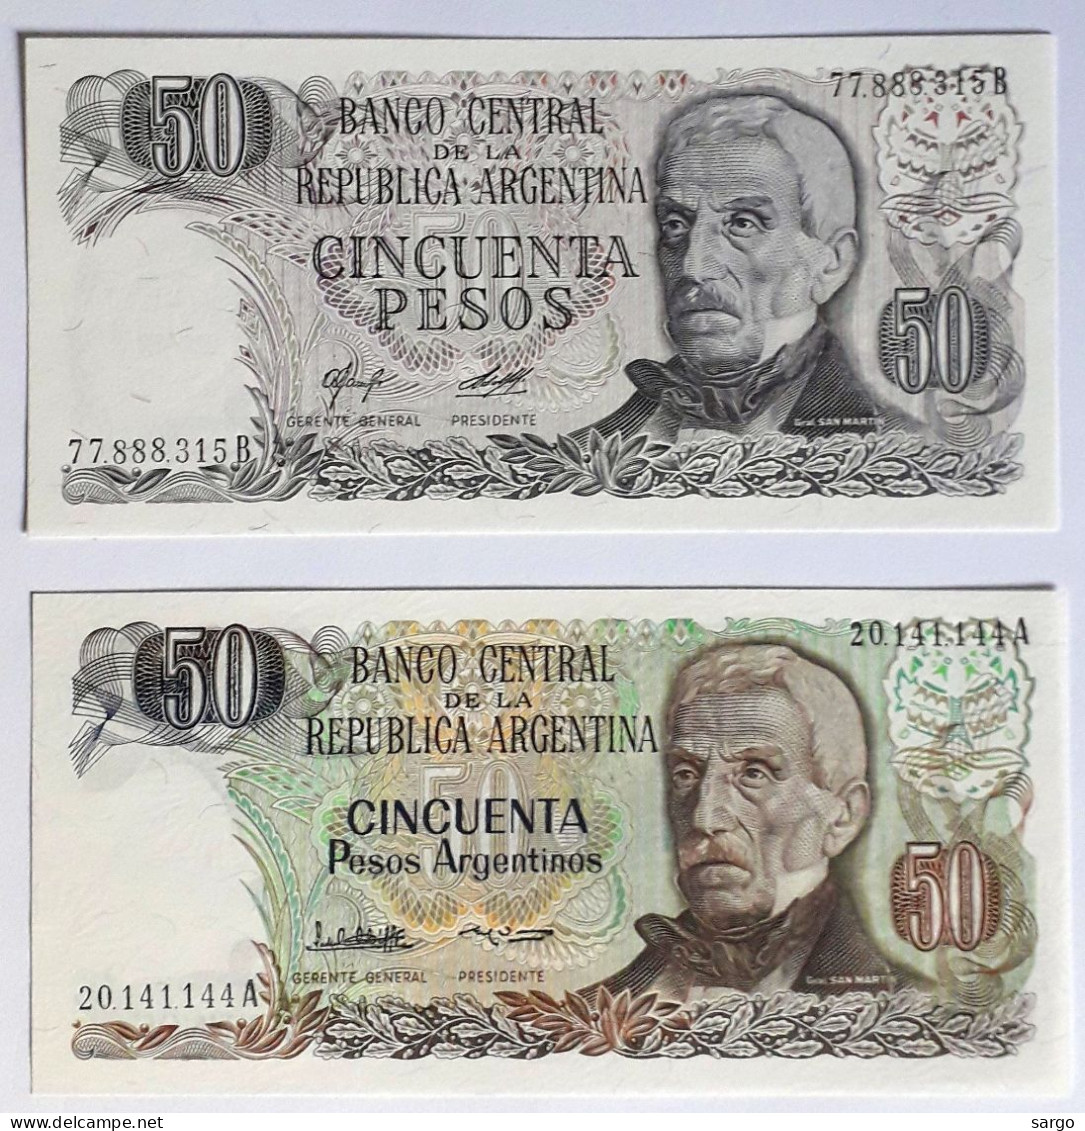 ARGENTINA - 50 PESOS (1976-78) P 301, 50 PESOS (1983-75) P 314  UNC - BANKNOTES - PAPER MONEY - CARTAMONETA - - Argentinien